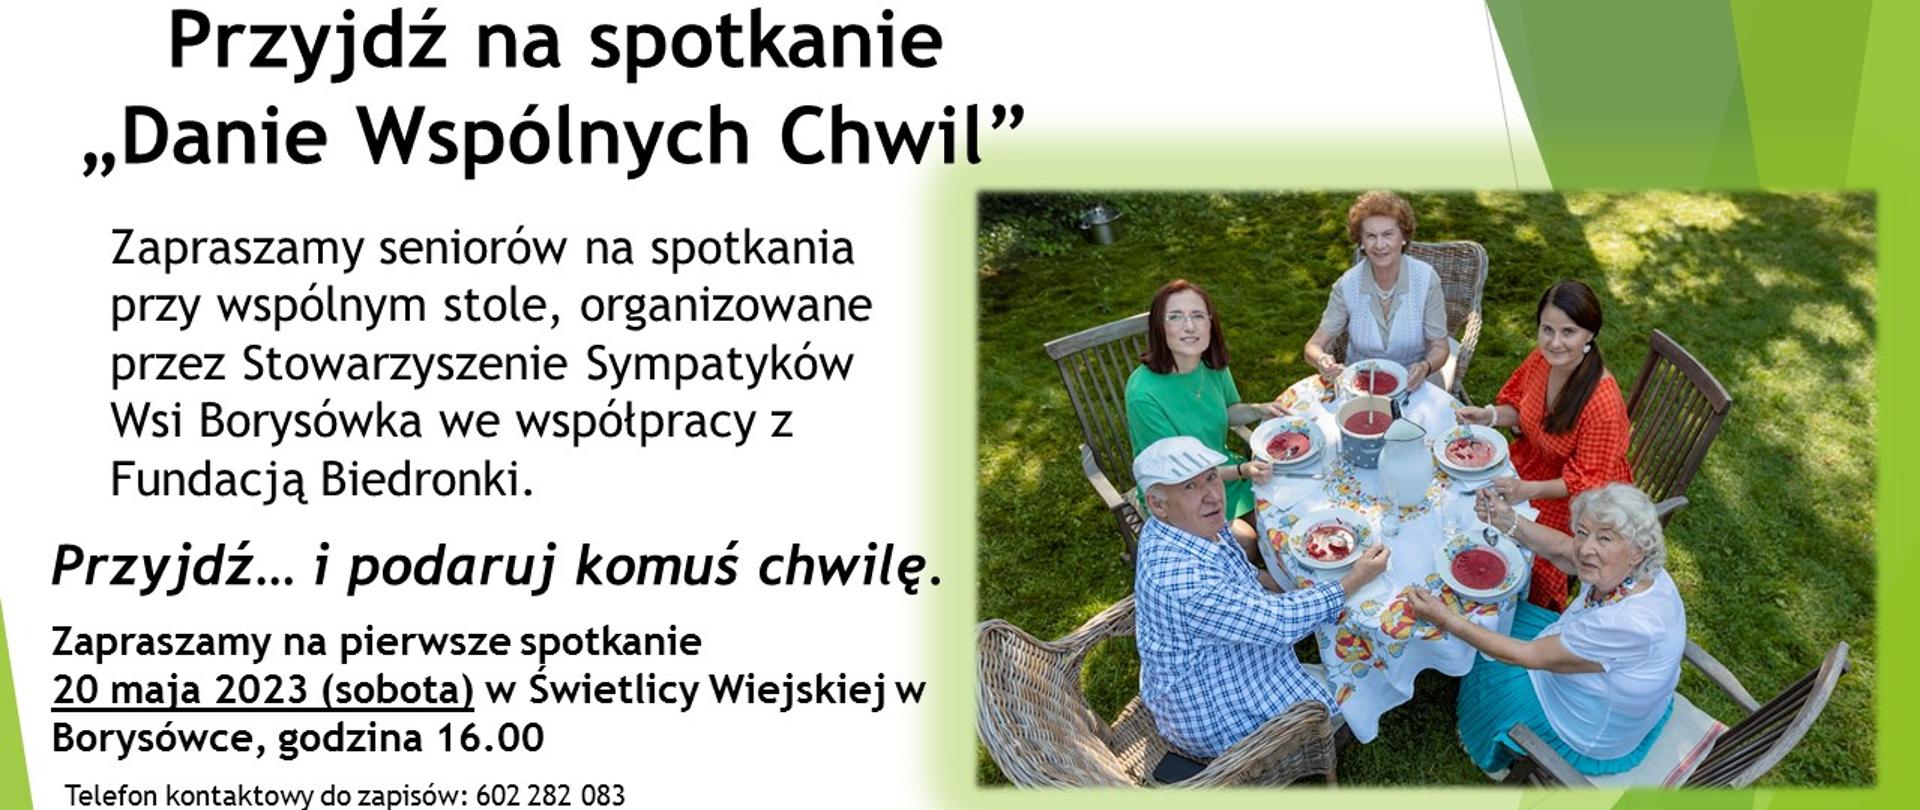 Plakat promujący wydarzenie - spotkanie "danie wspólnych chwil". Obok zdjęcia osób siedzących przy stole, informacje organizacyjne (zawarte w artykule), u dołu plakatu- logotypy: fundatorów akcji i Borysówki - wsi drewnianej - organizatora akcji